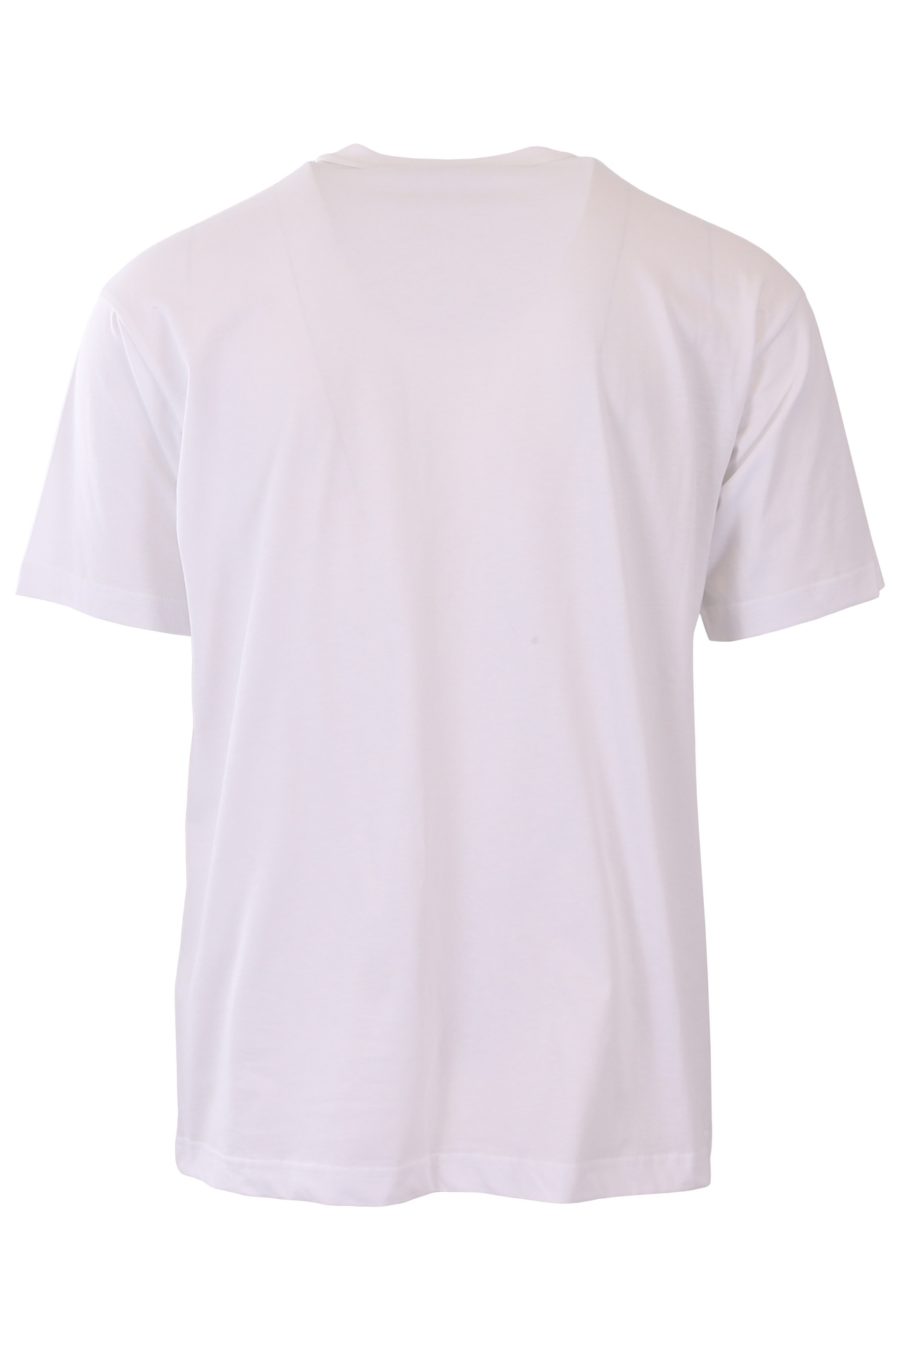 T-shirt Versace Jeans Couture blanc logo brodé rouge - 6bb9b61a990e64a1807d92ad0506c3550dc43e71